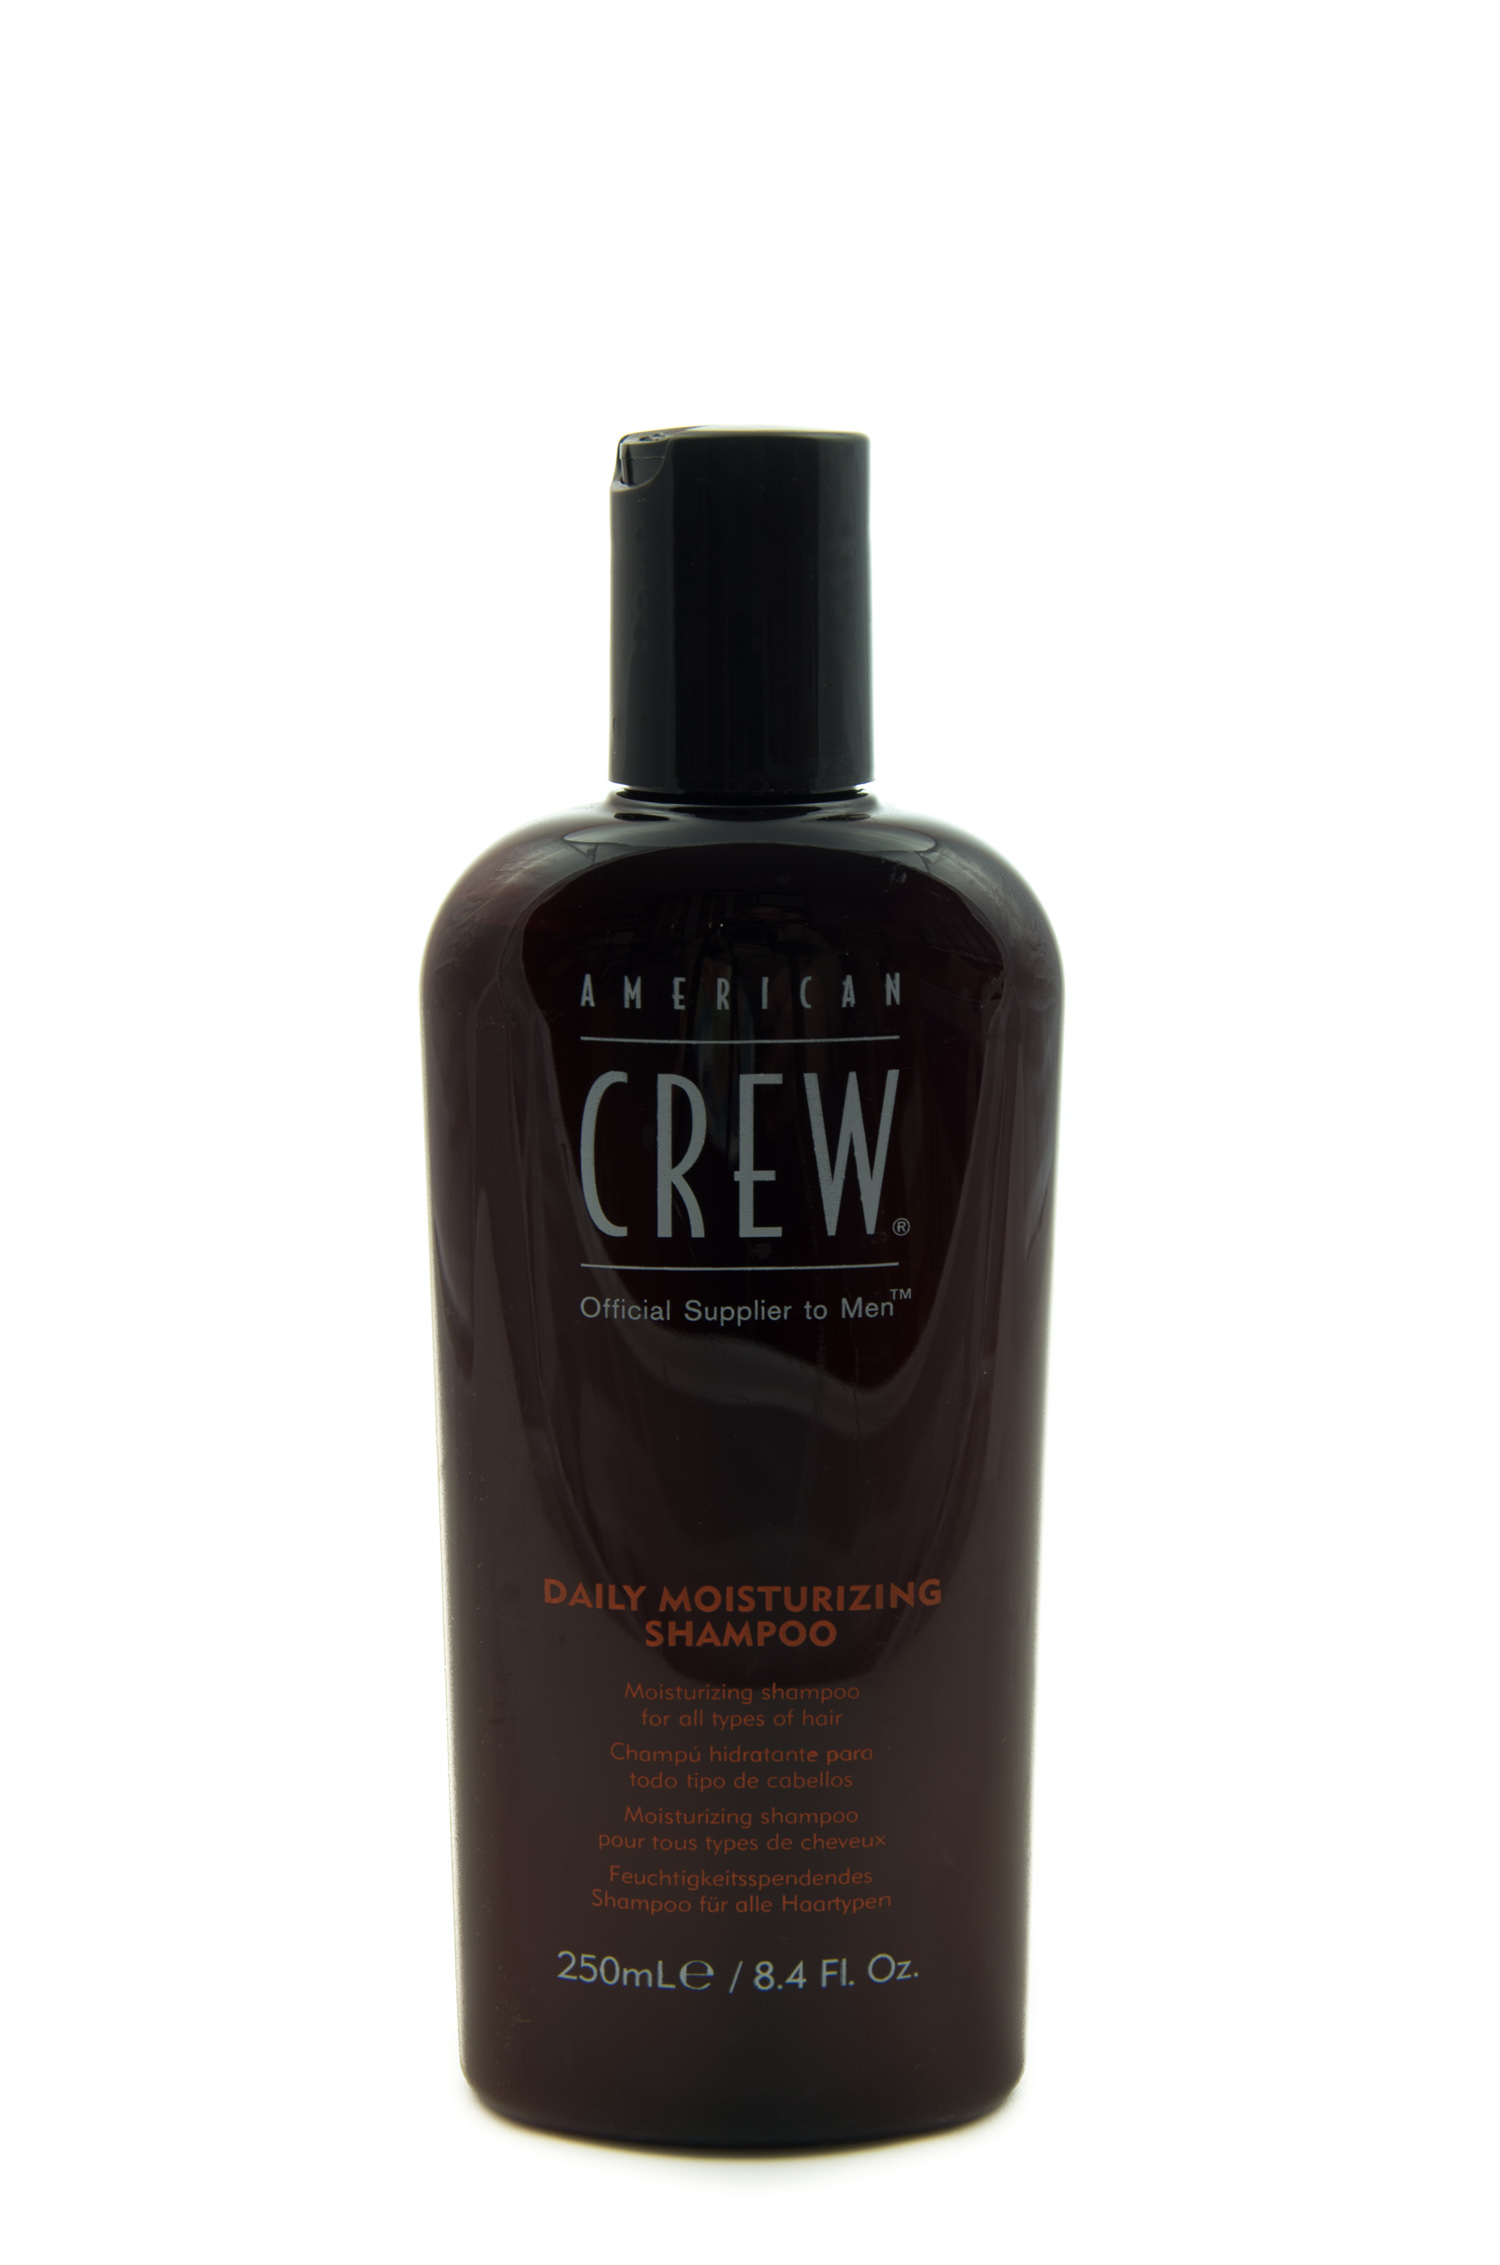 american crew daily szampon skład